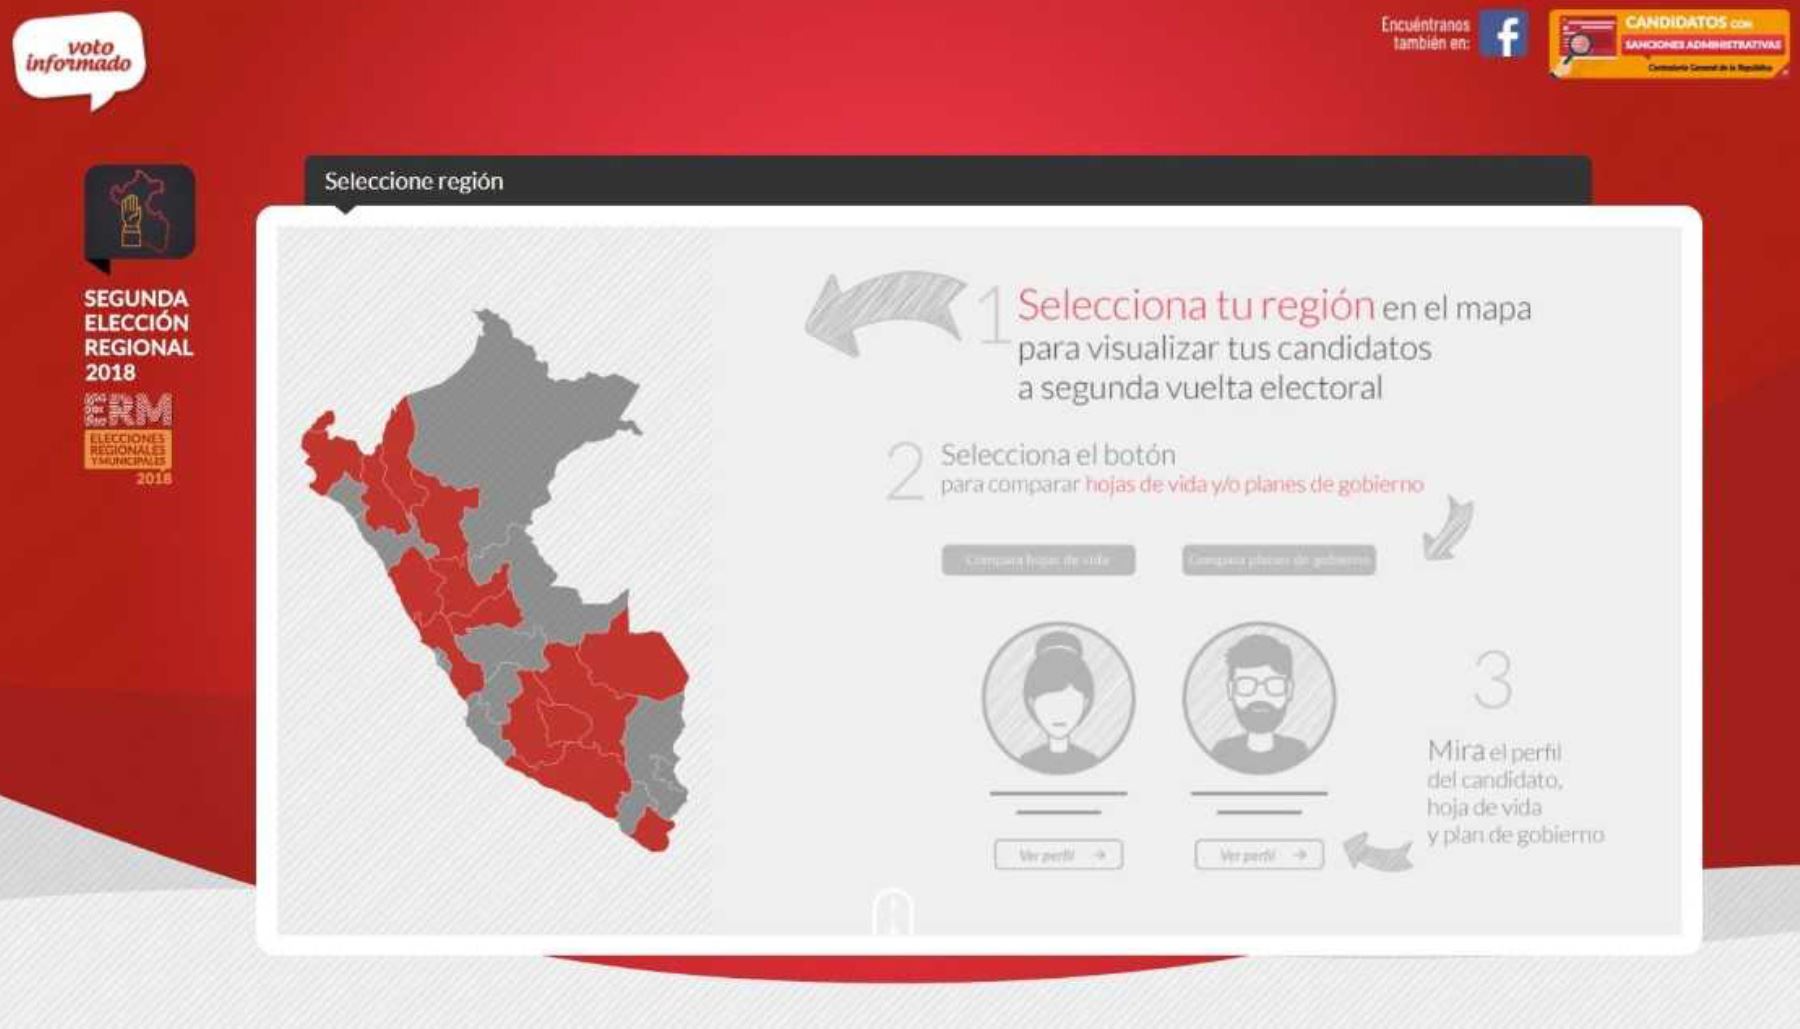 El Jurado Nacional de Elecciones (JNE) renovó la plataforma digital “Voto Informado”, que permite conocer y comparar las hojas de vida y los planes de gobierno de los candidatos a la segunda vuelta electoral que se realizará el próximo 9 de diciembre en 15 regiones del país.